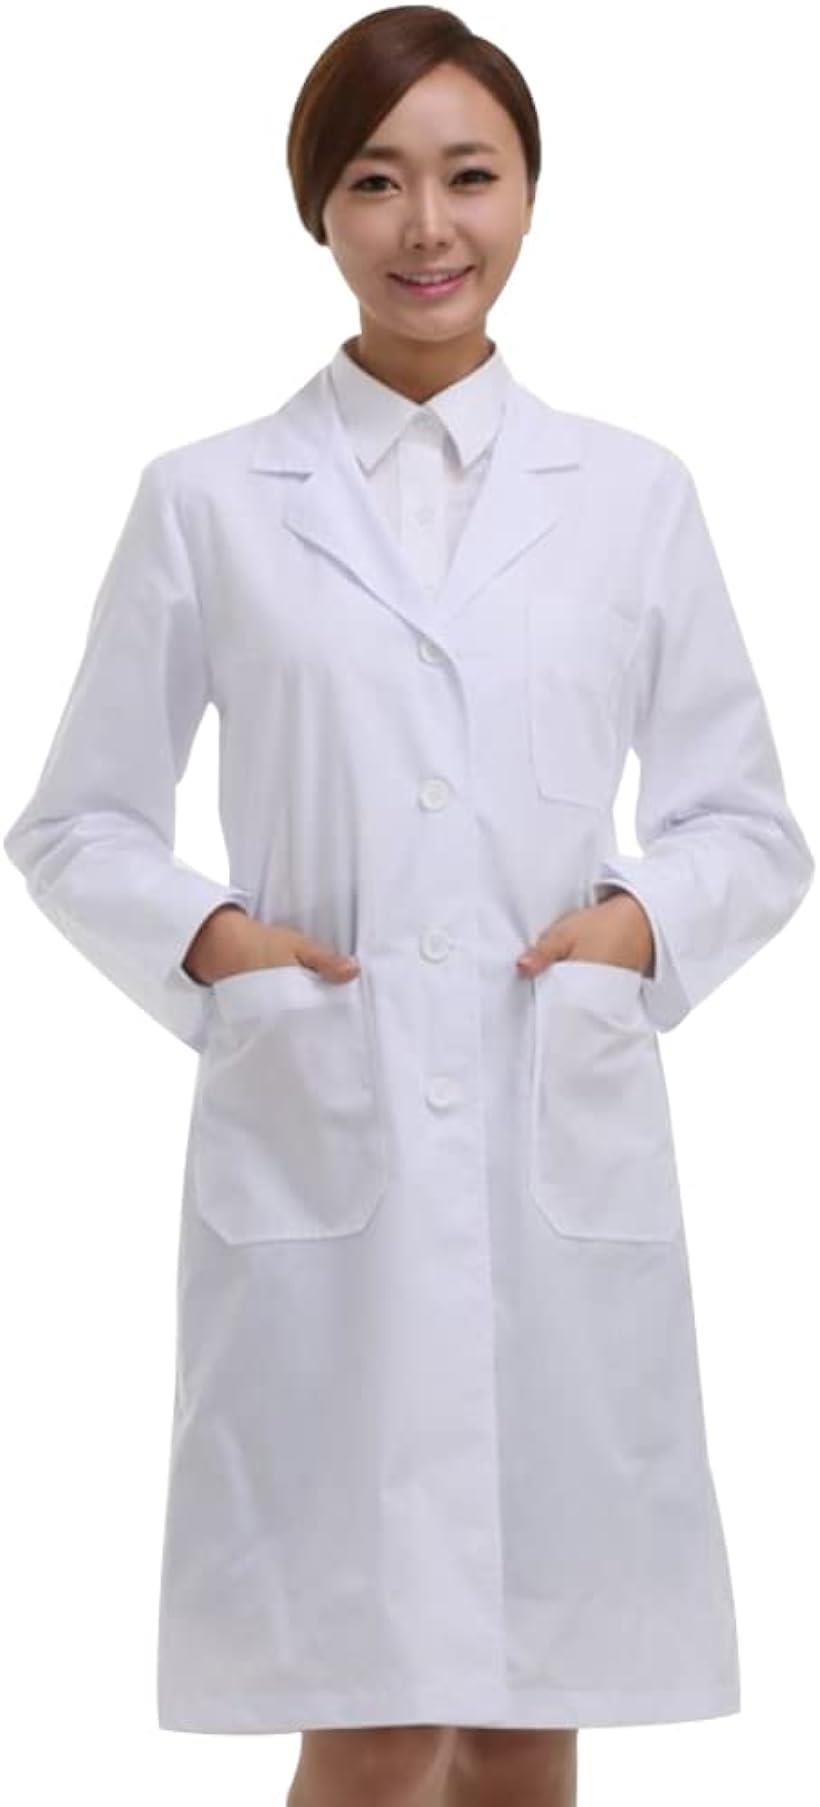 女医 先生 ドクター ナース コスチューム コスプレ 白衣( ホワイト, XL)